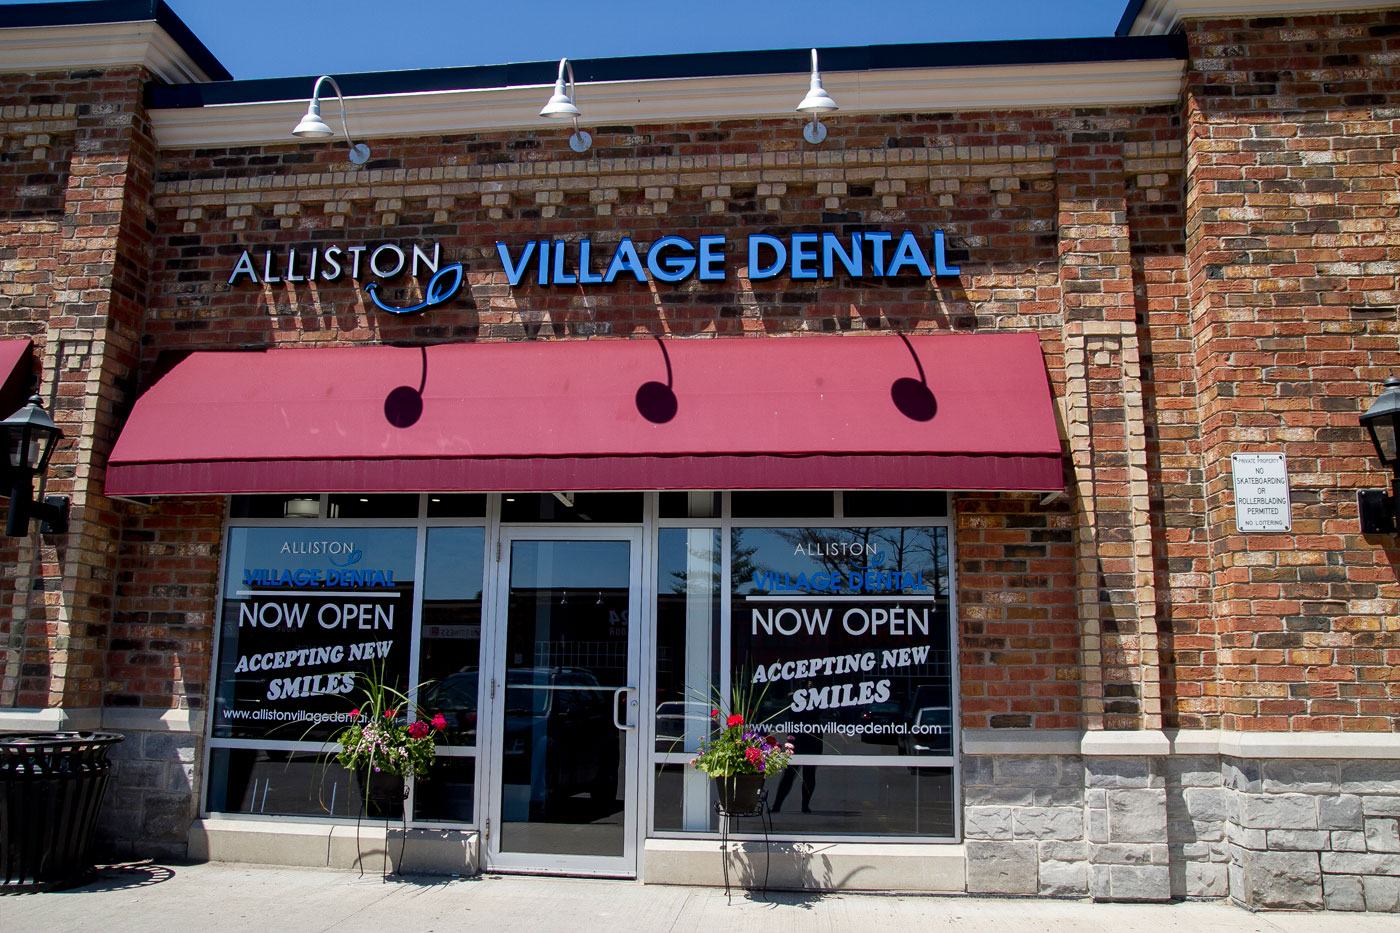 Alliston Village Dental Office